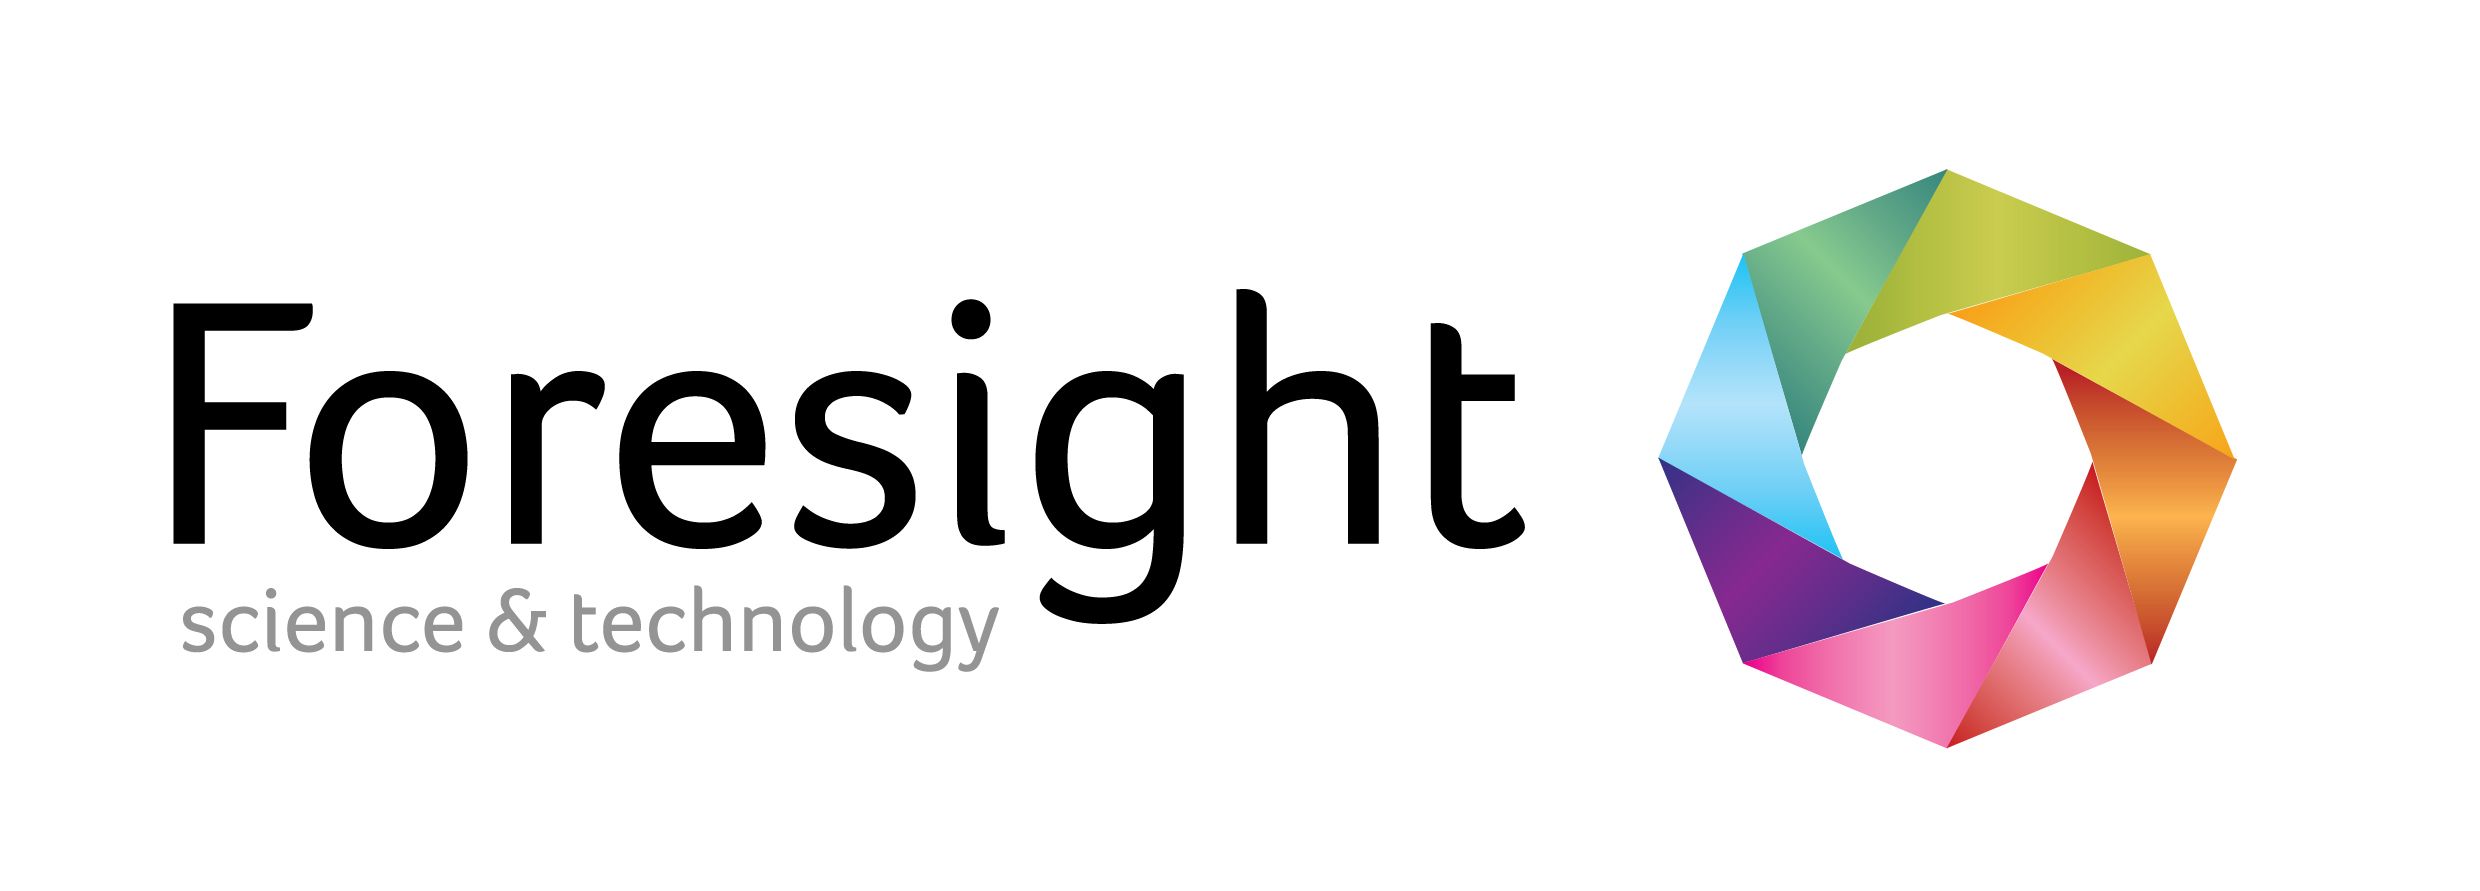 foresightst Logo